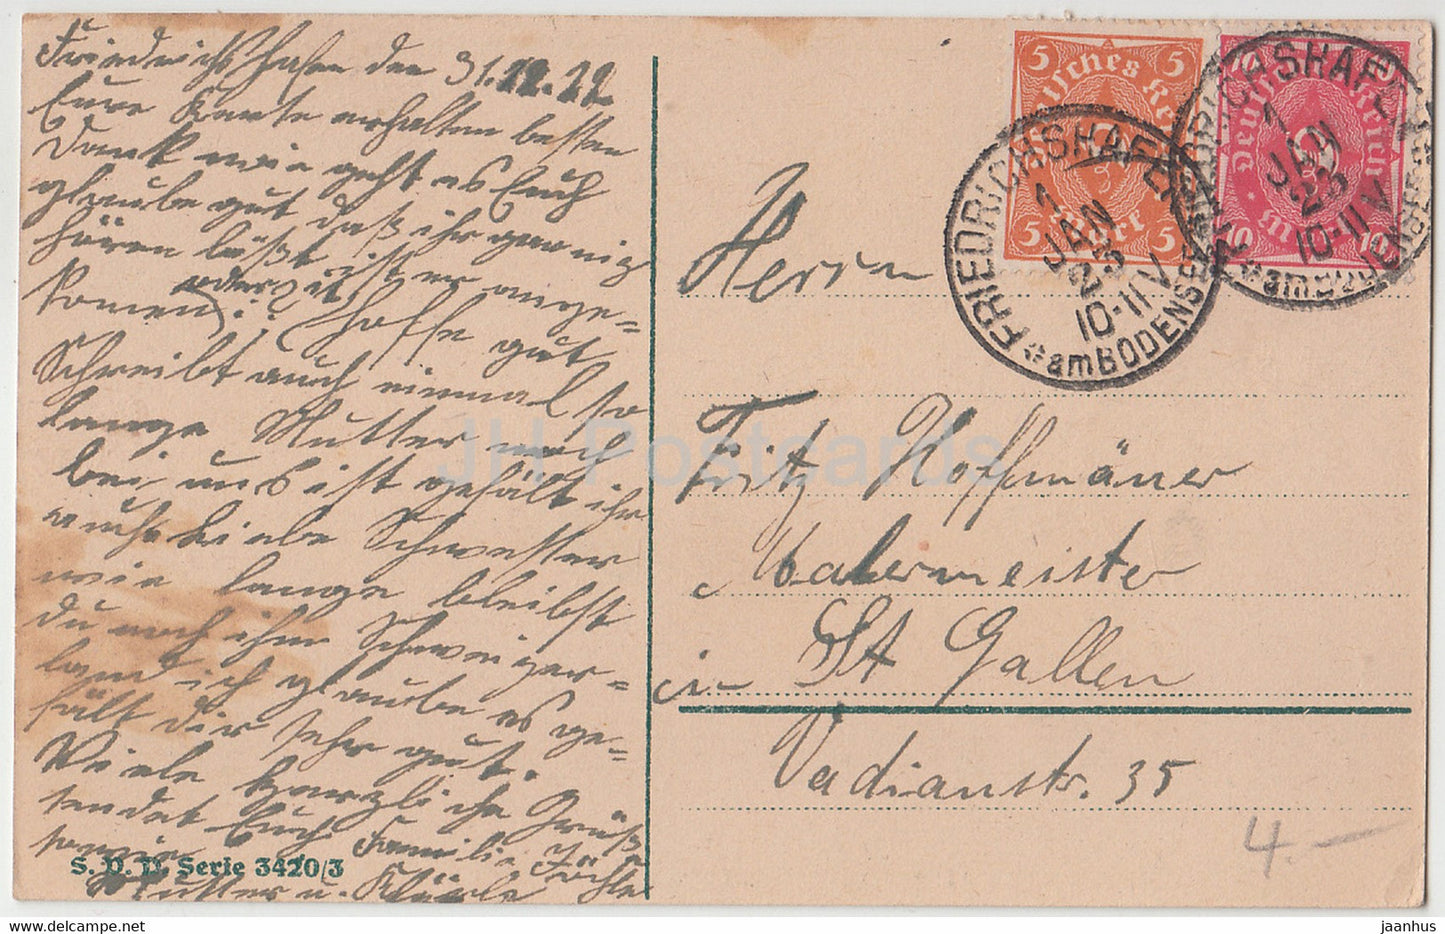 Carte de vœux du Nouvel An - Ein Gluckliches neues Jahr - oiseaux - mésange bleue - SVD - carte postale ancienne - 1923 - Allemagne - utilisé